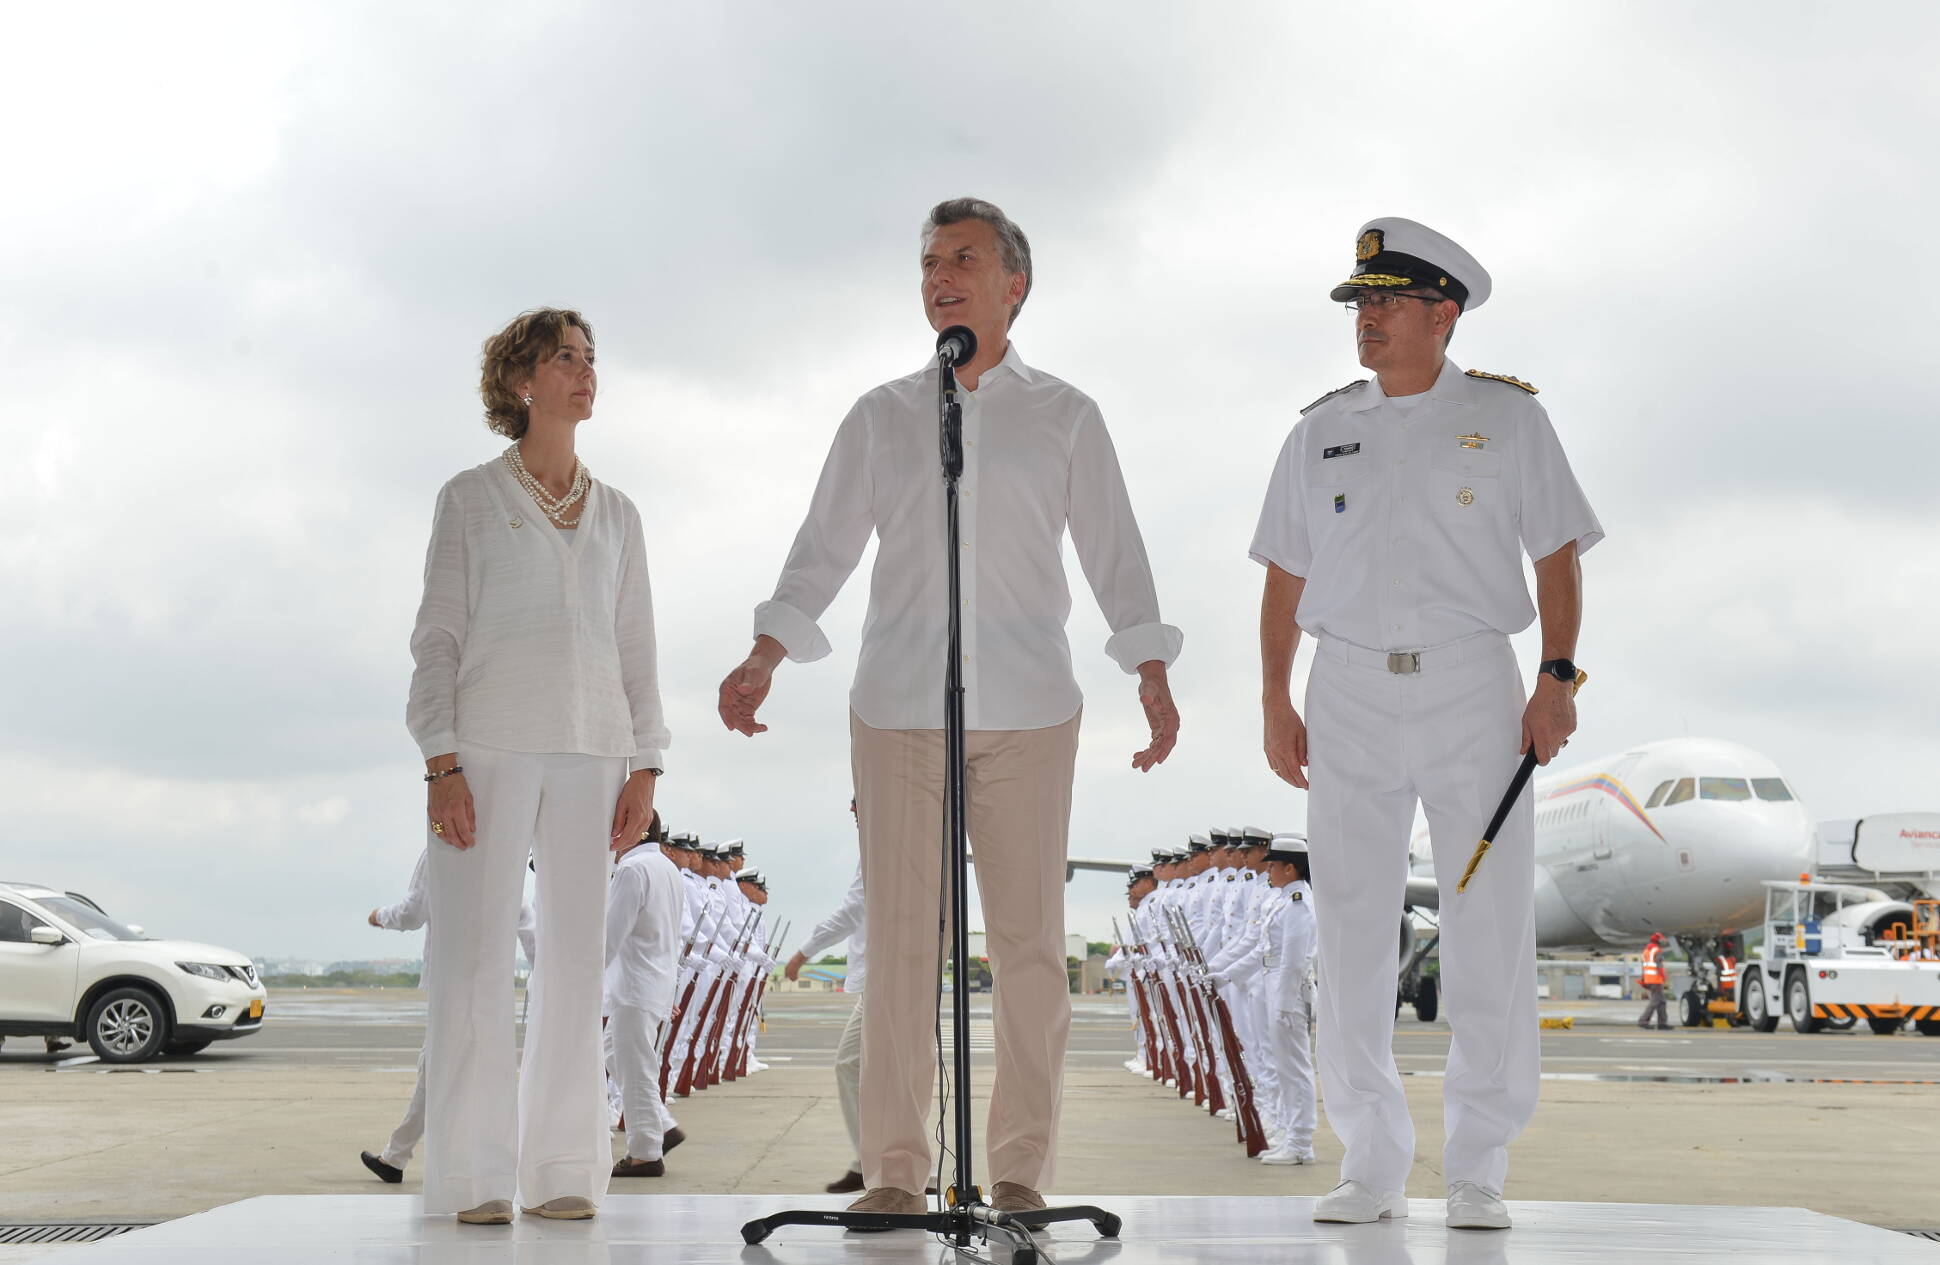 El presidente Macri asistió al histórico acuerdo de paz entre el Gobierno de Colombia y las FARC